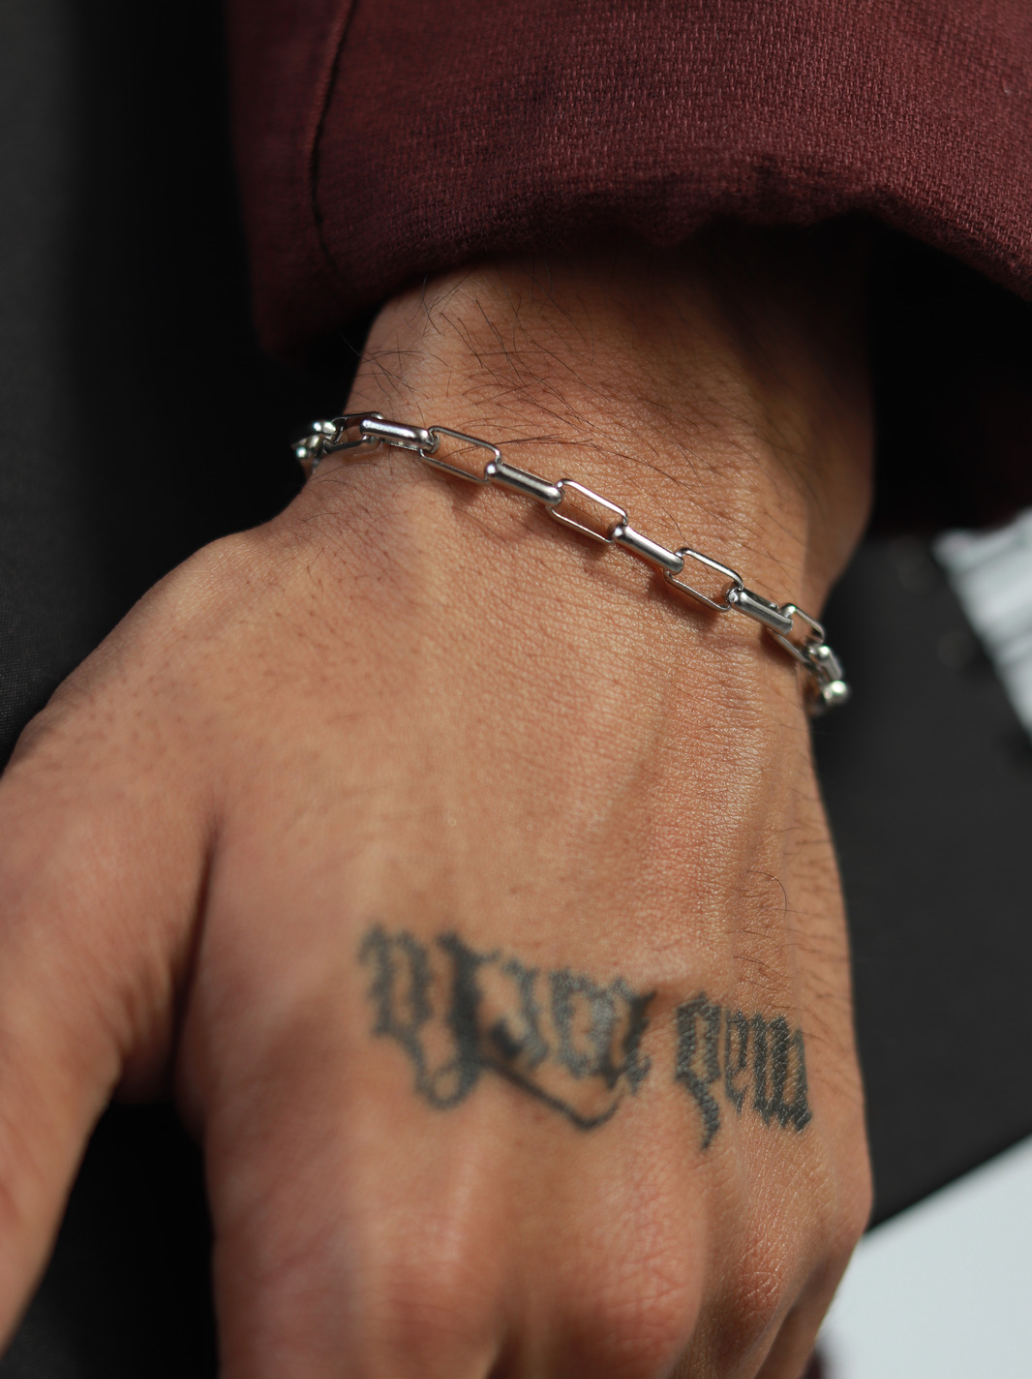 fineline bracelet tattoo with little letterikt included 🤍 #fineline #... |  TikTok